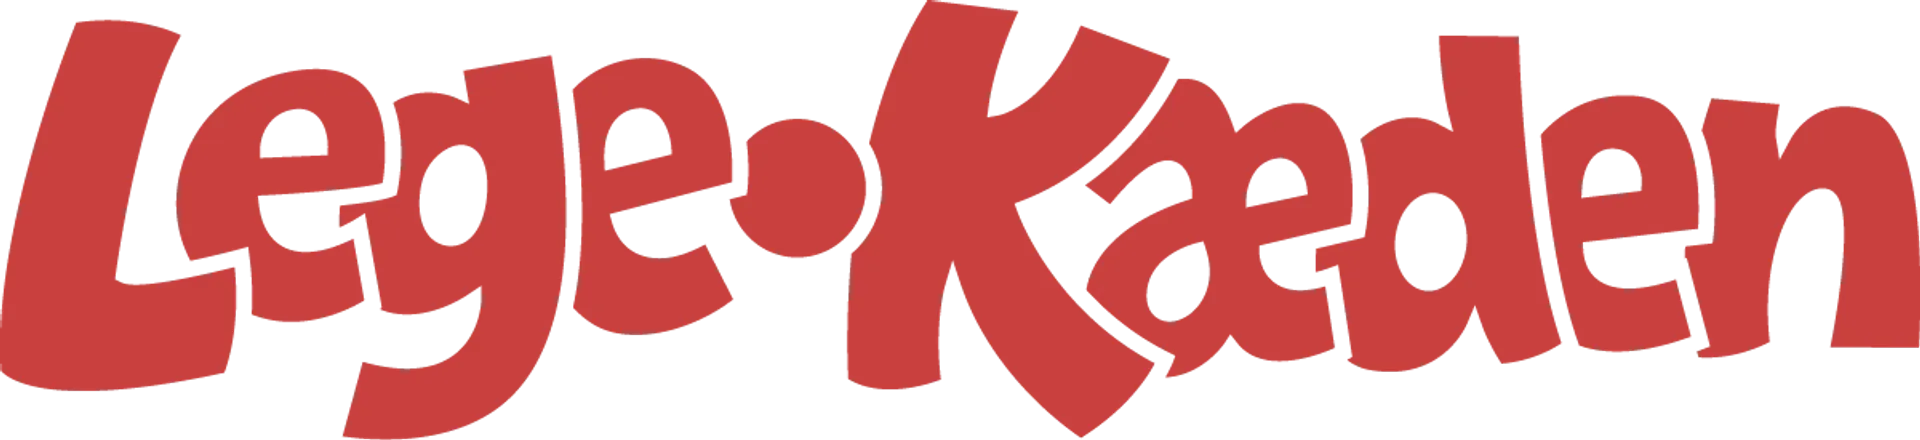 LEGEKÆDEN logo of current catalogue